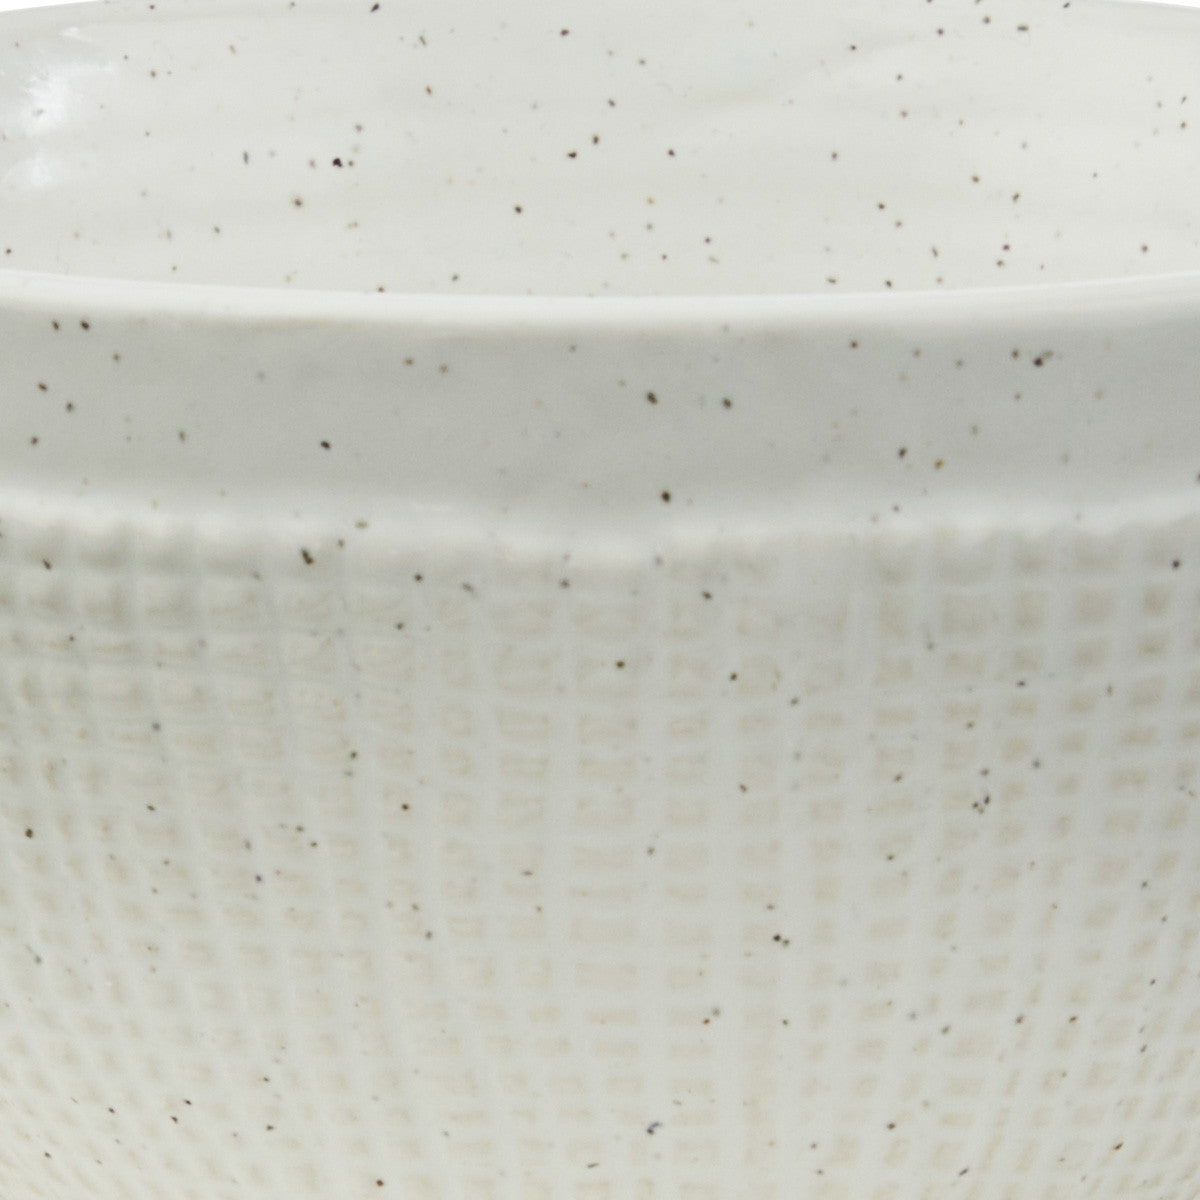 Potter Stone Cereal Bowls - Set of 4 Park Designs